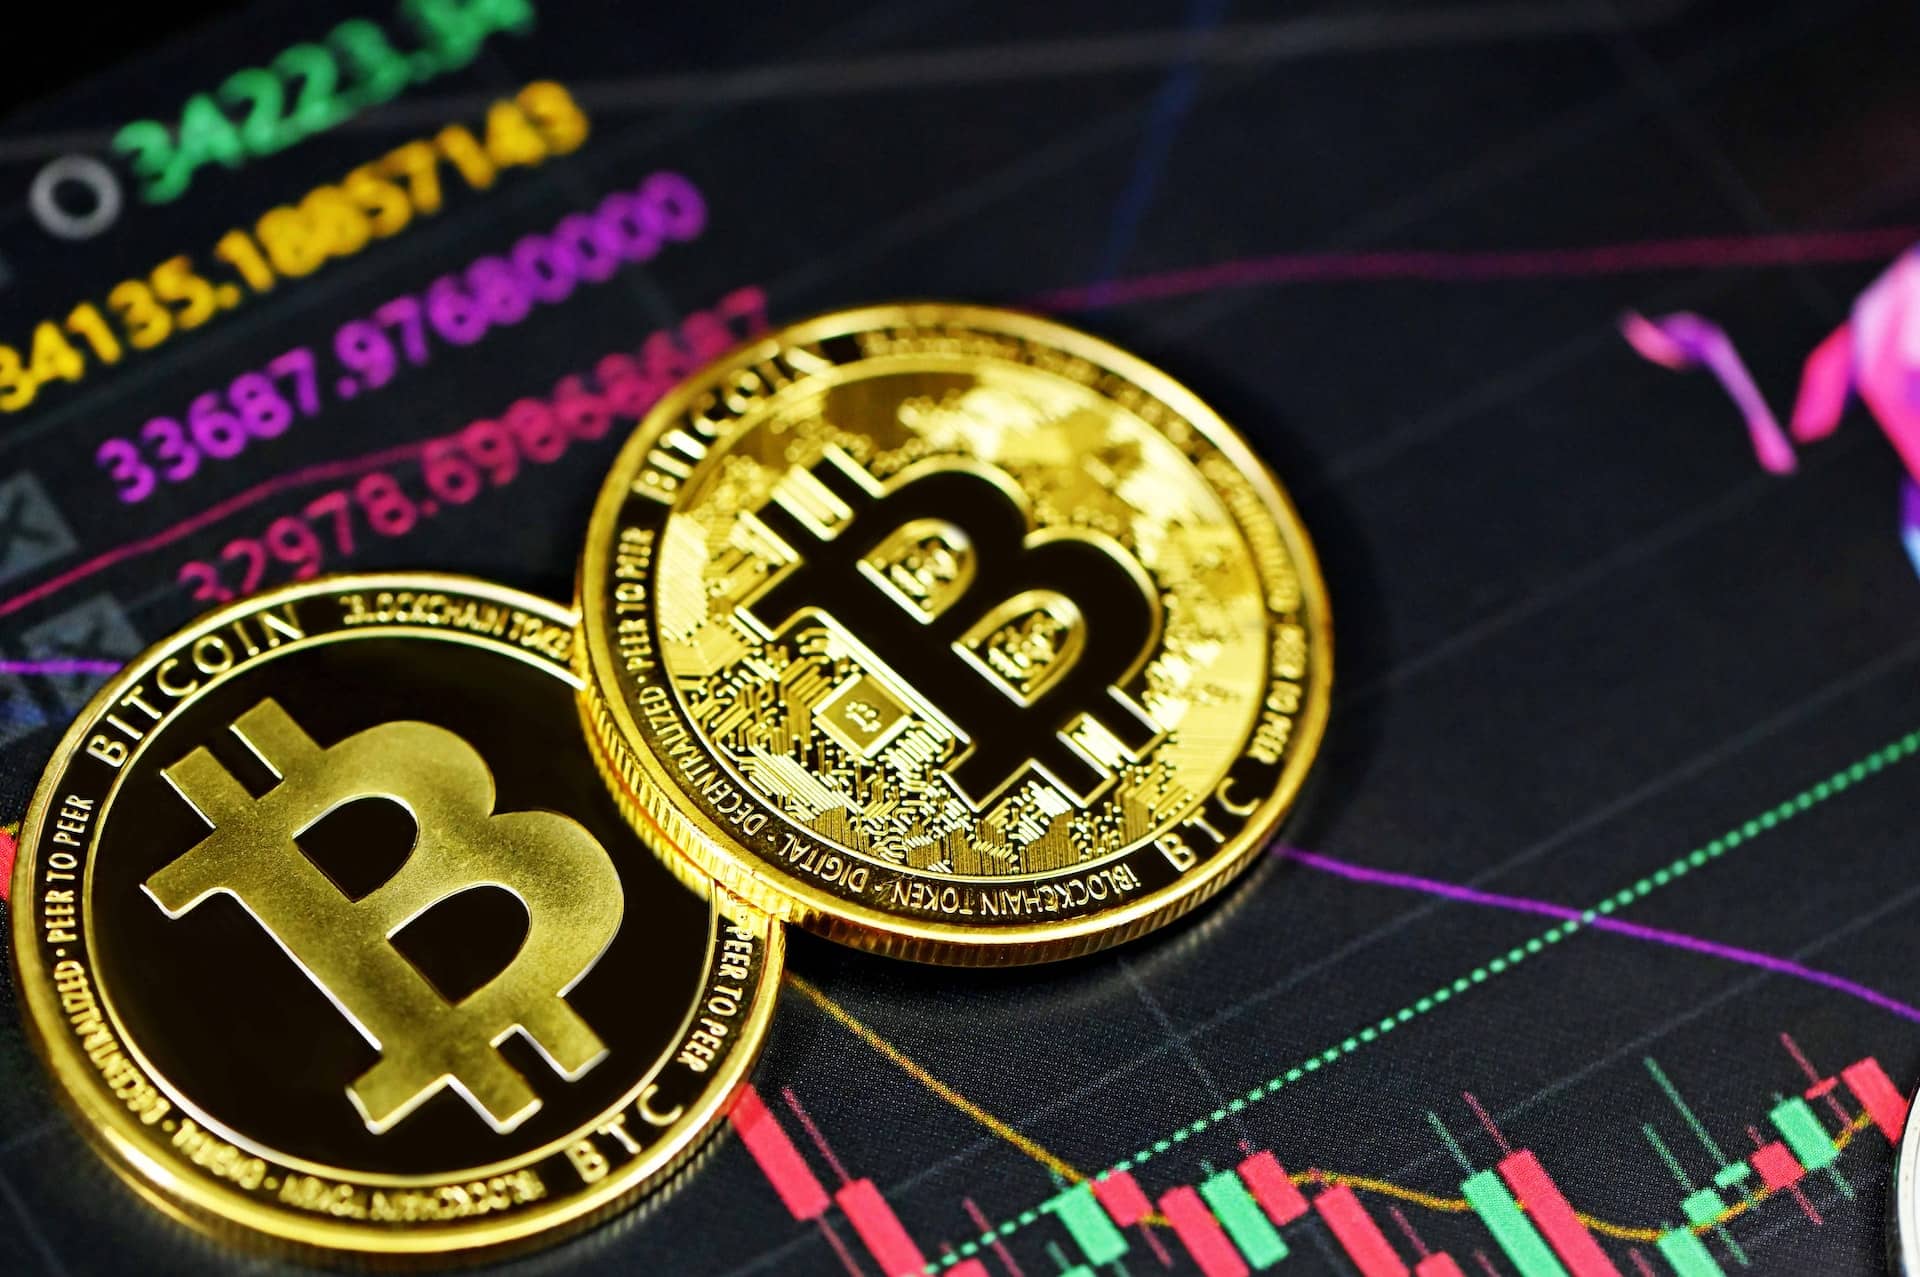 Aktien vs. Bitcoin: Welche Anlage ist besser?